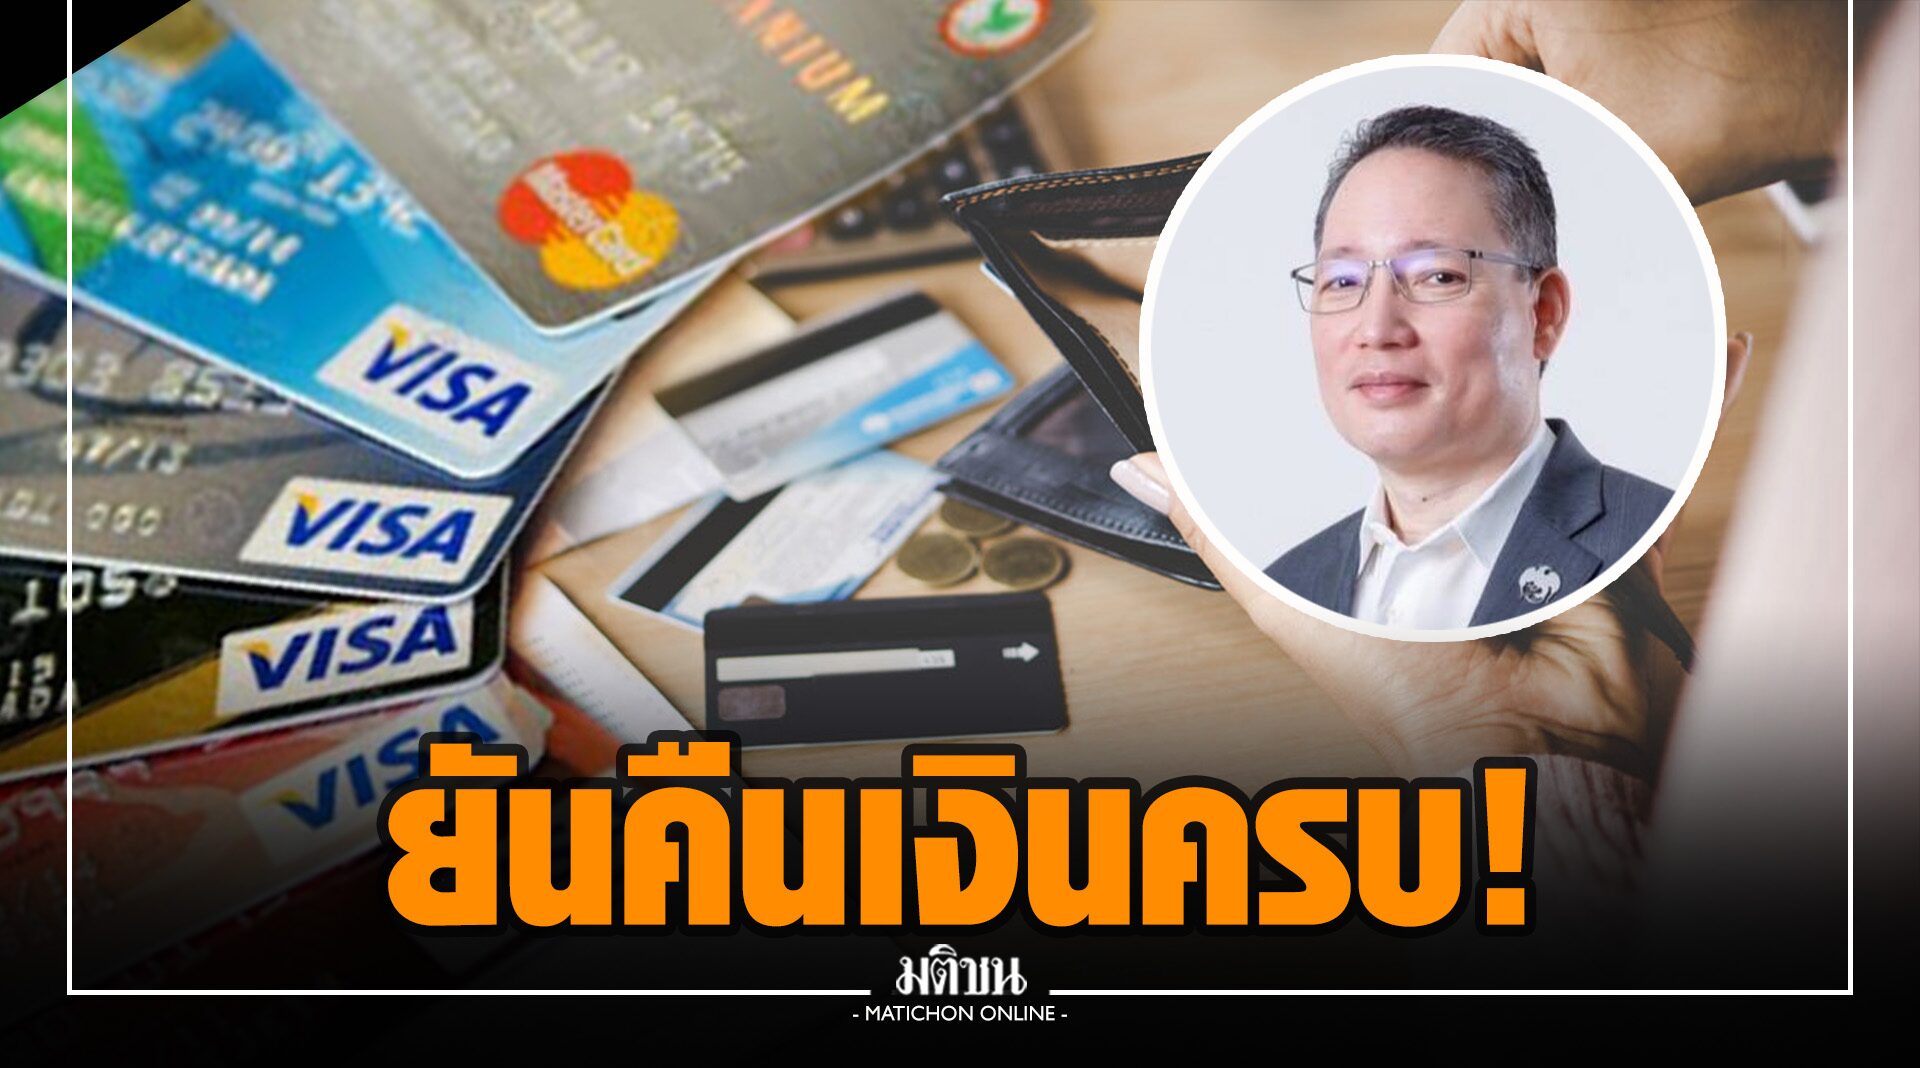 ส.ธนาคารไทย ยัน คืนเงิน 130 ลบ. เข้าบัญชีถูกดูดครบ เล็งยกระดับความปลอดภัยบัตรเดบิต-เครดิต